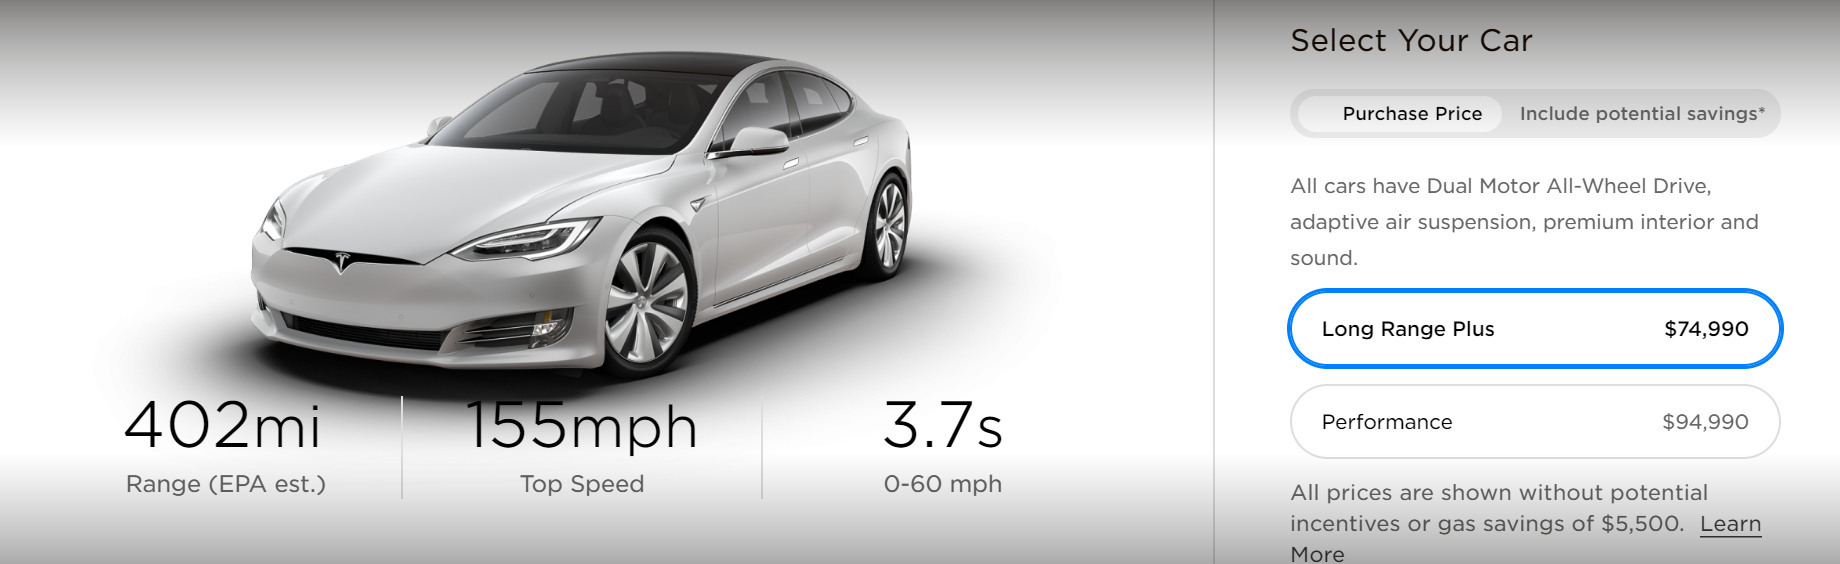 Model S Long Range Plus проезжает дальше любого серийного электромобиля